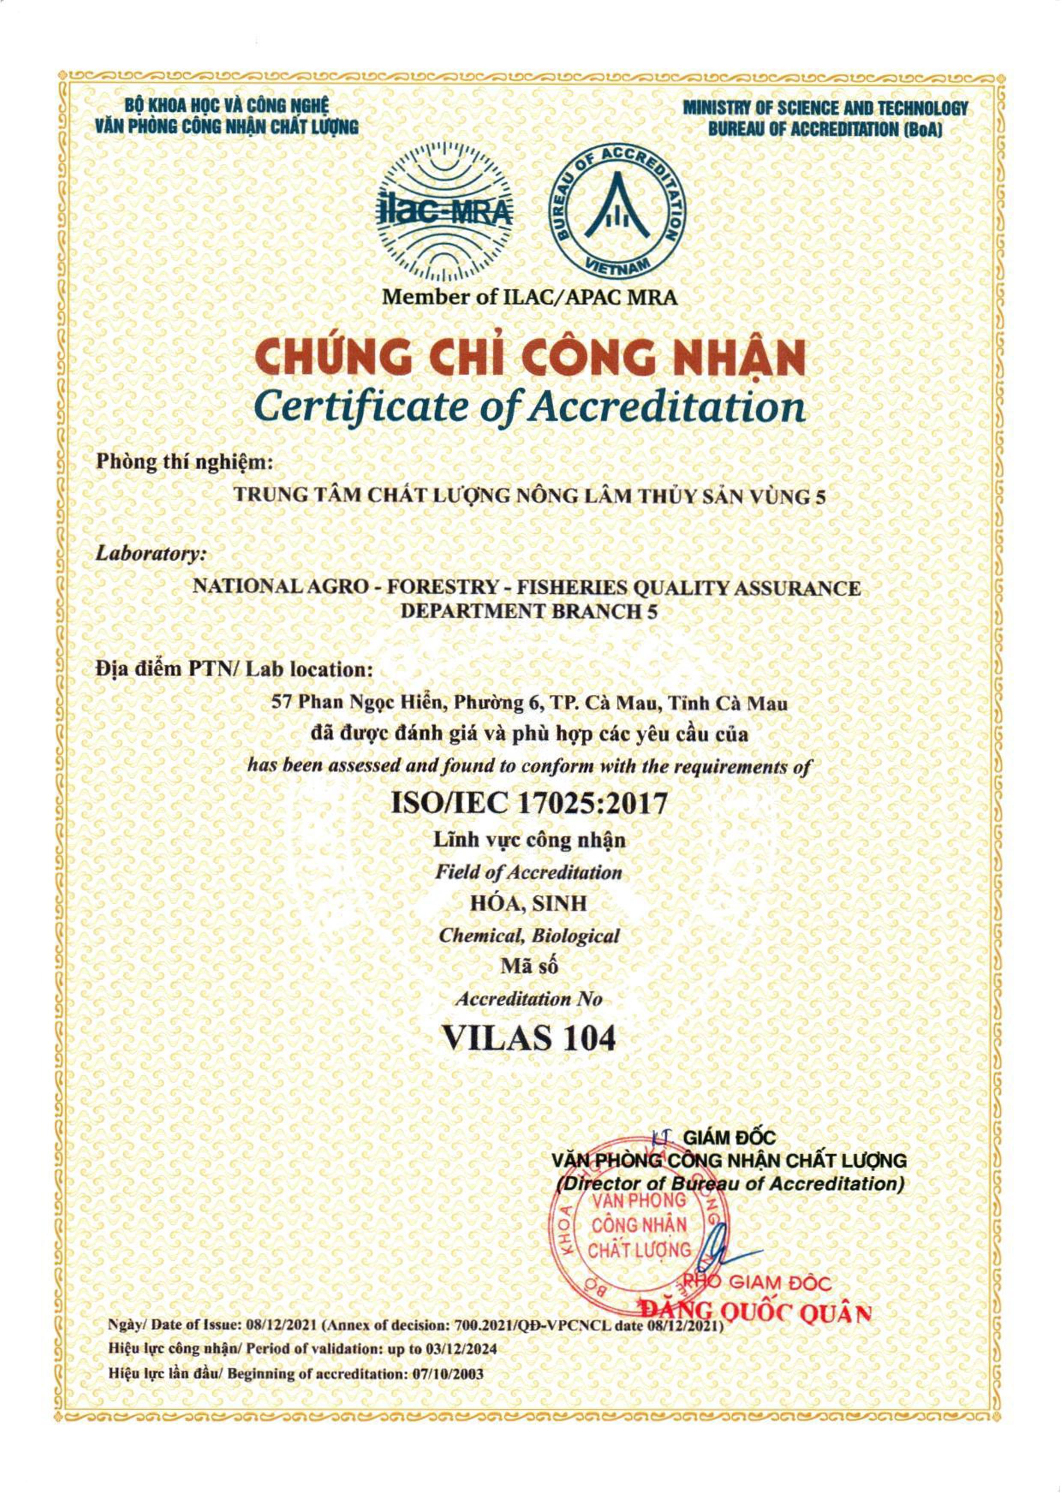 20211208 700 2021 QD VPCNCL CongNhan17025 2017 (ChungChi)